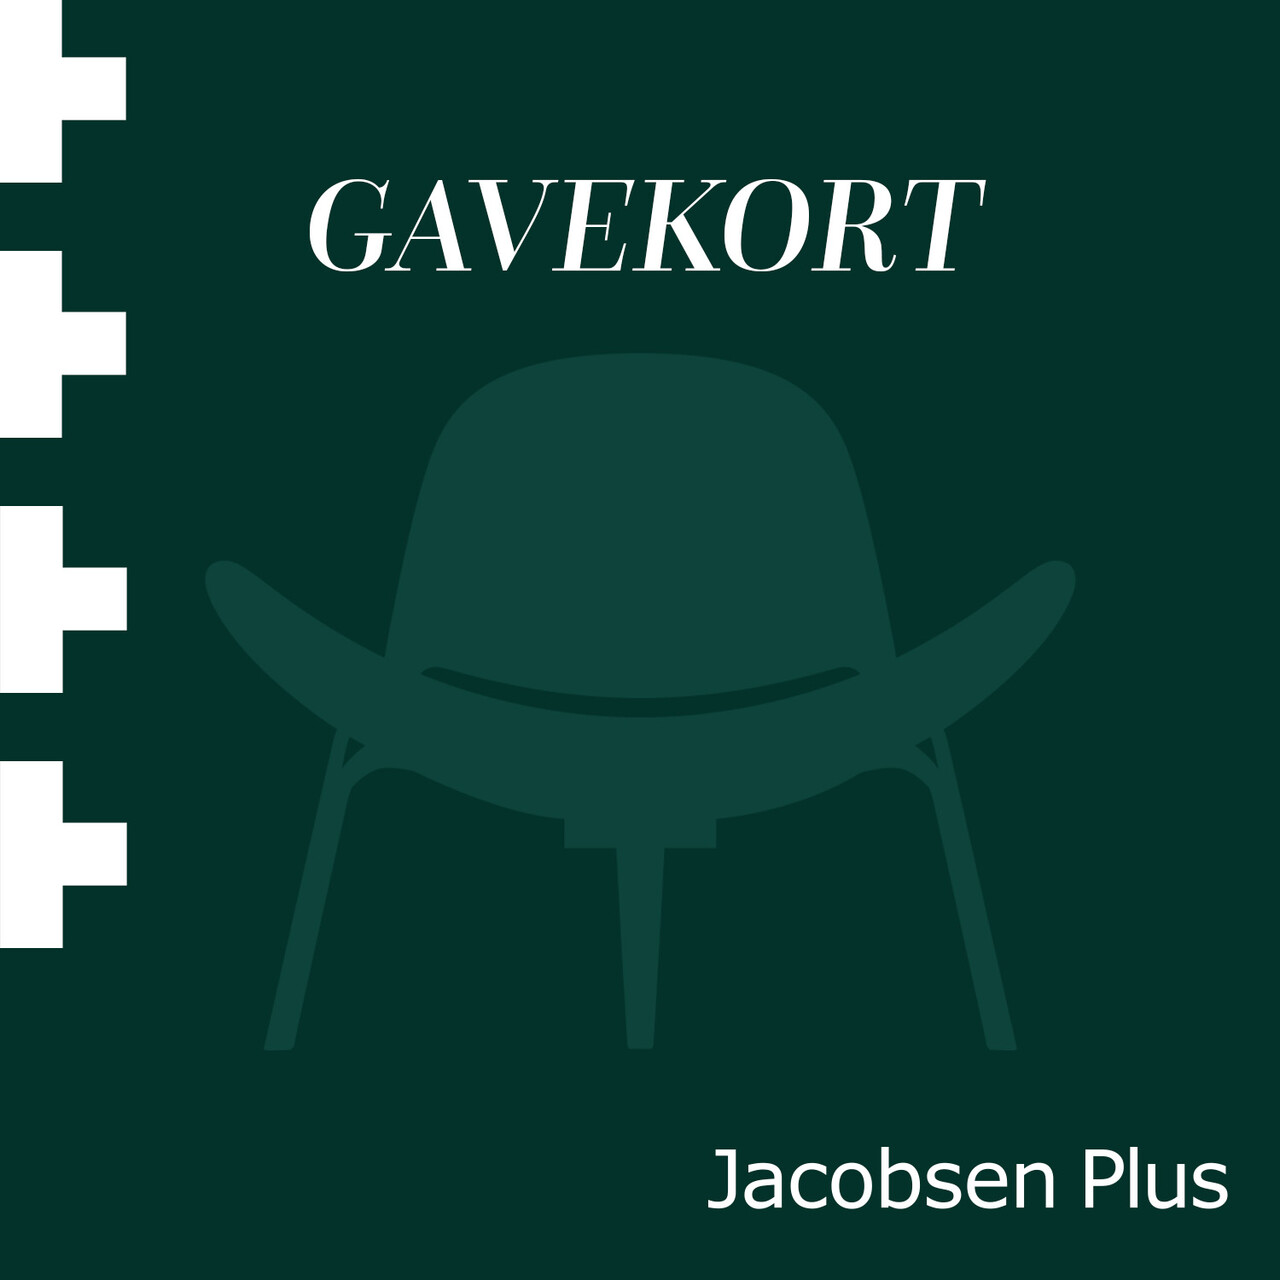 Elektronisk gavekort til Jacobsen Plus (1000)